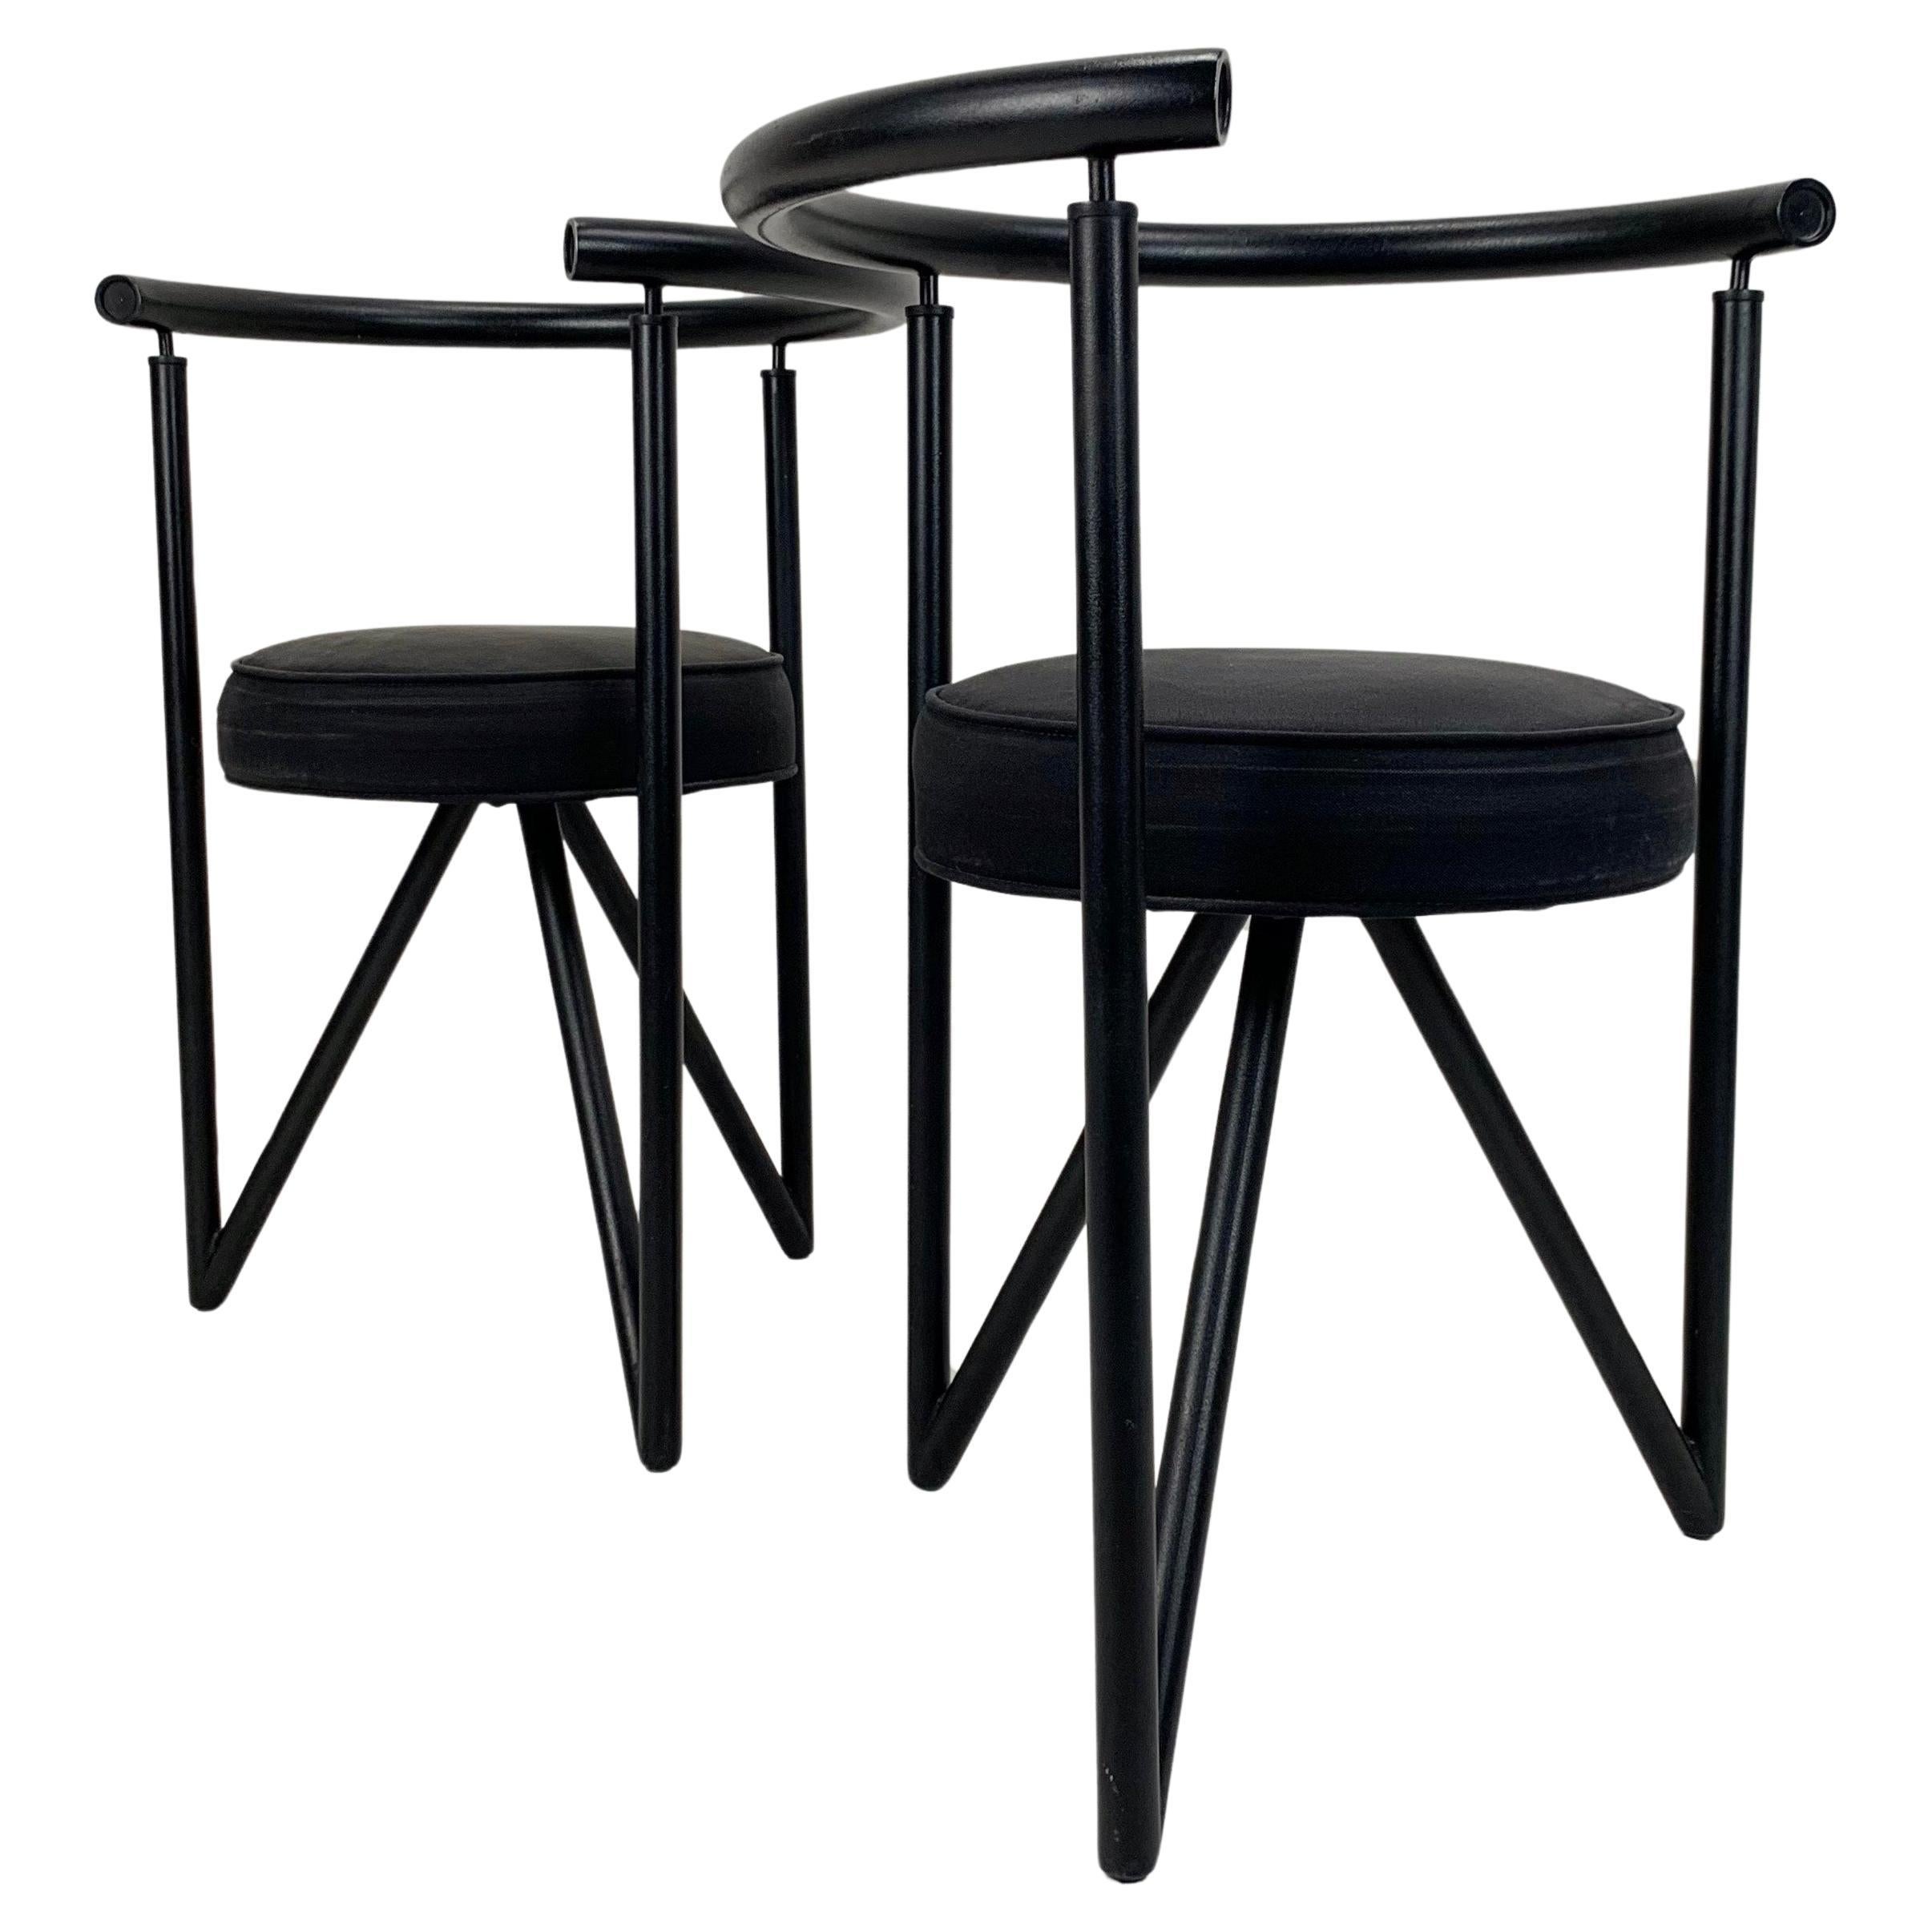 Paire de fauteuils modèle Miss Dorn de Philippe Starck pour Disform 1982.
Structure en métal noir, assise ronde en tissu noir d'origine.
Dimensions : 70 cm H, 54 cm L, 44 cm P, hauteur d'assise : 46 cm.
État vintage d'origine.
Tous les achats sont